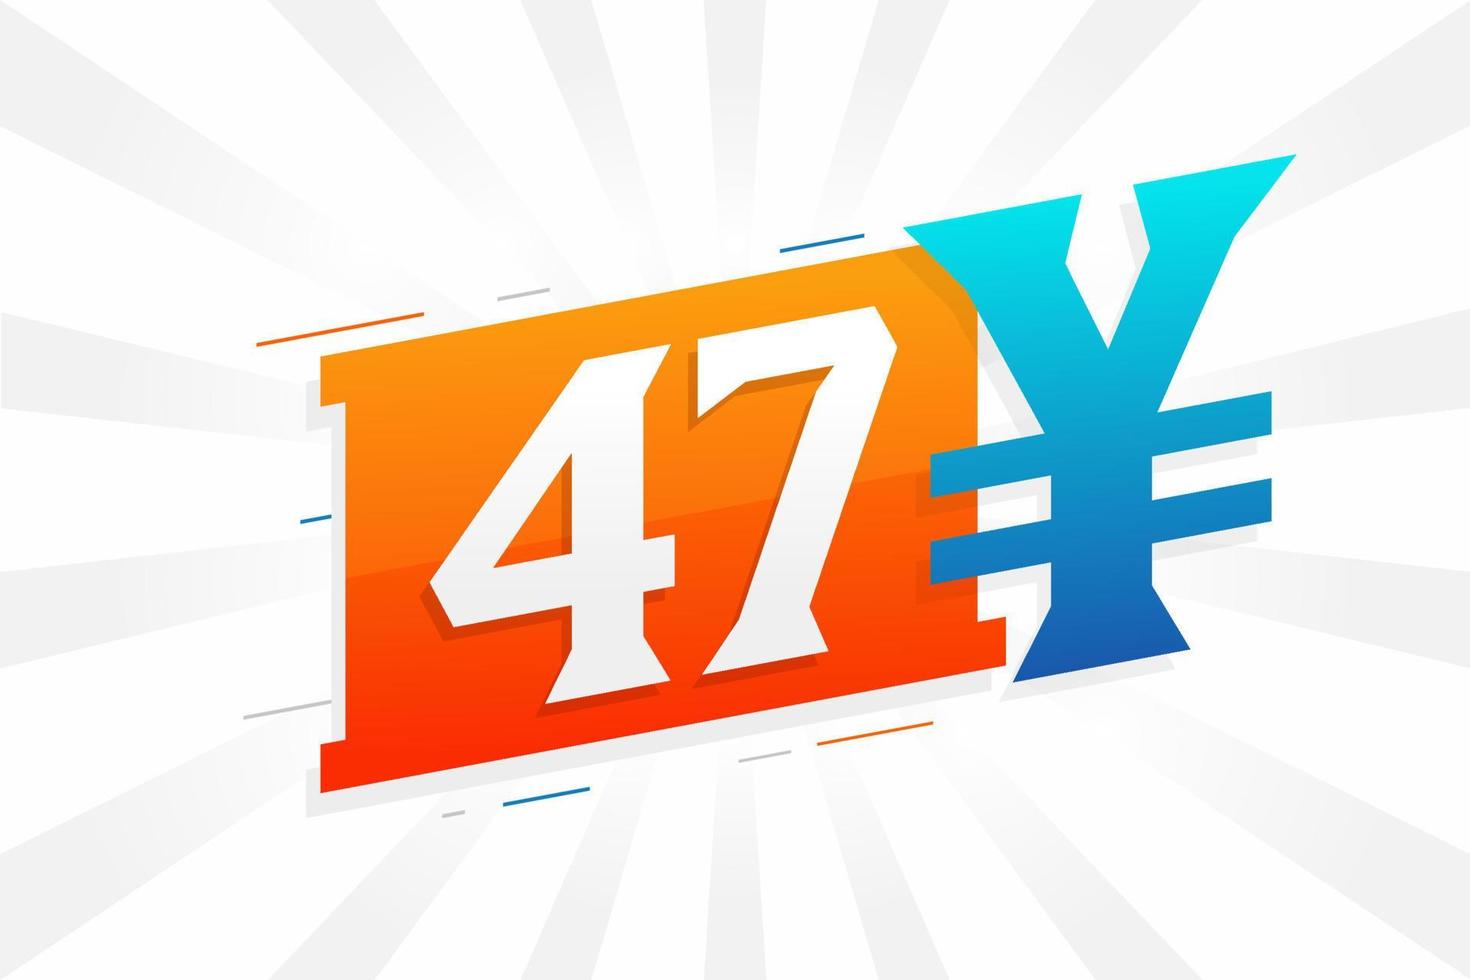 47 Yuan chinesische Währung Vektortextsymbol. 47 Yen japanische Währung Geld Aktienvektor vektor